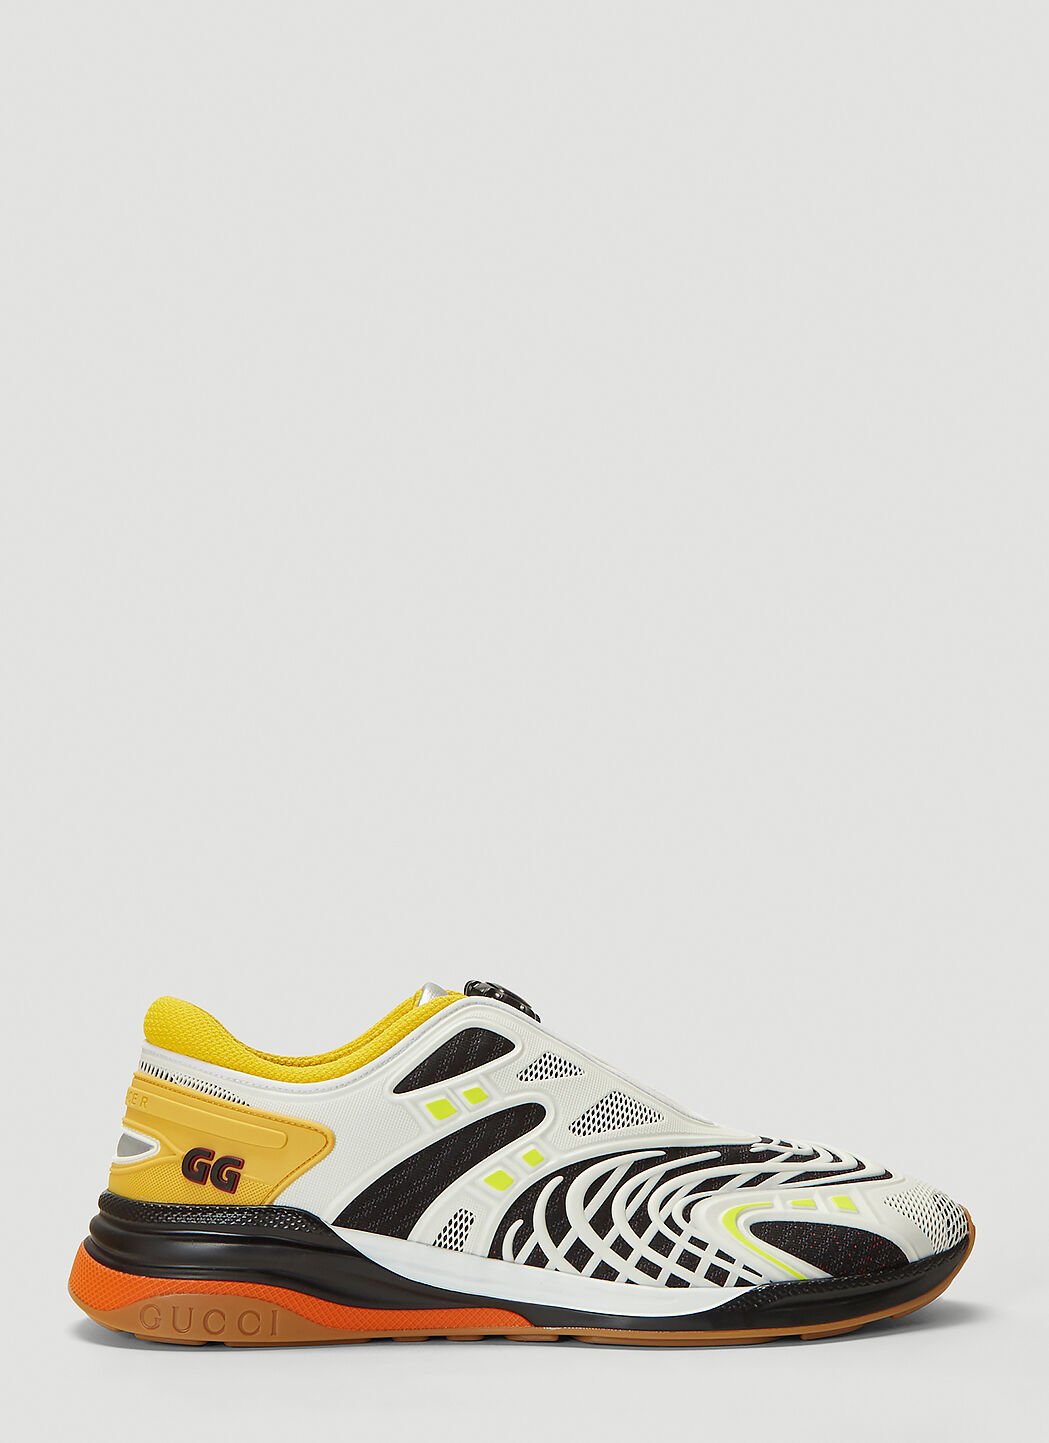 Gucci yellow sneakers 44.5 | Yellow sneakers, Gucci, Gucci sneakers